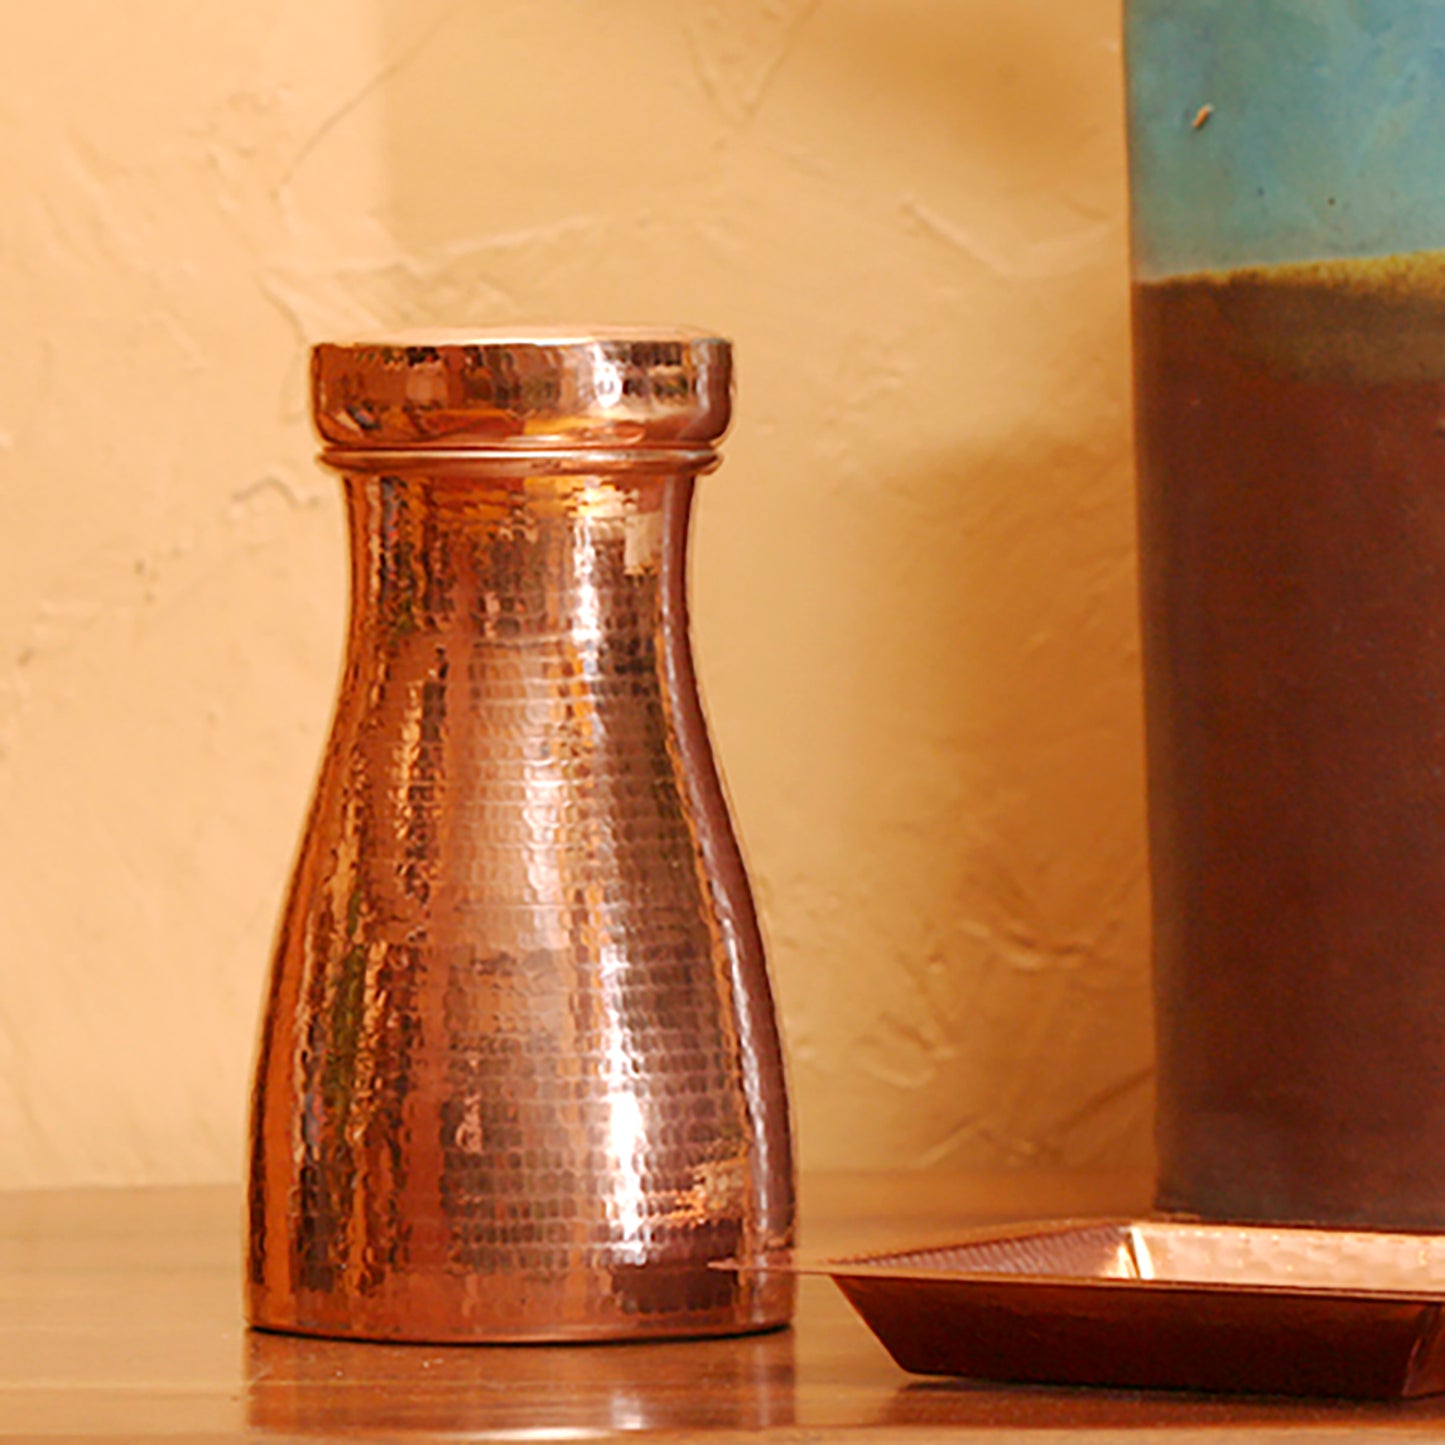 Copper Carafe & Glass